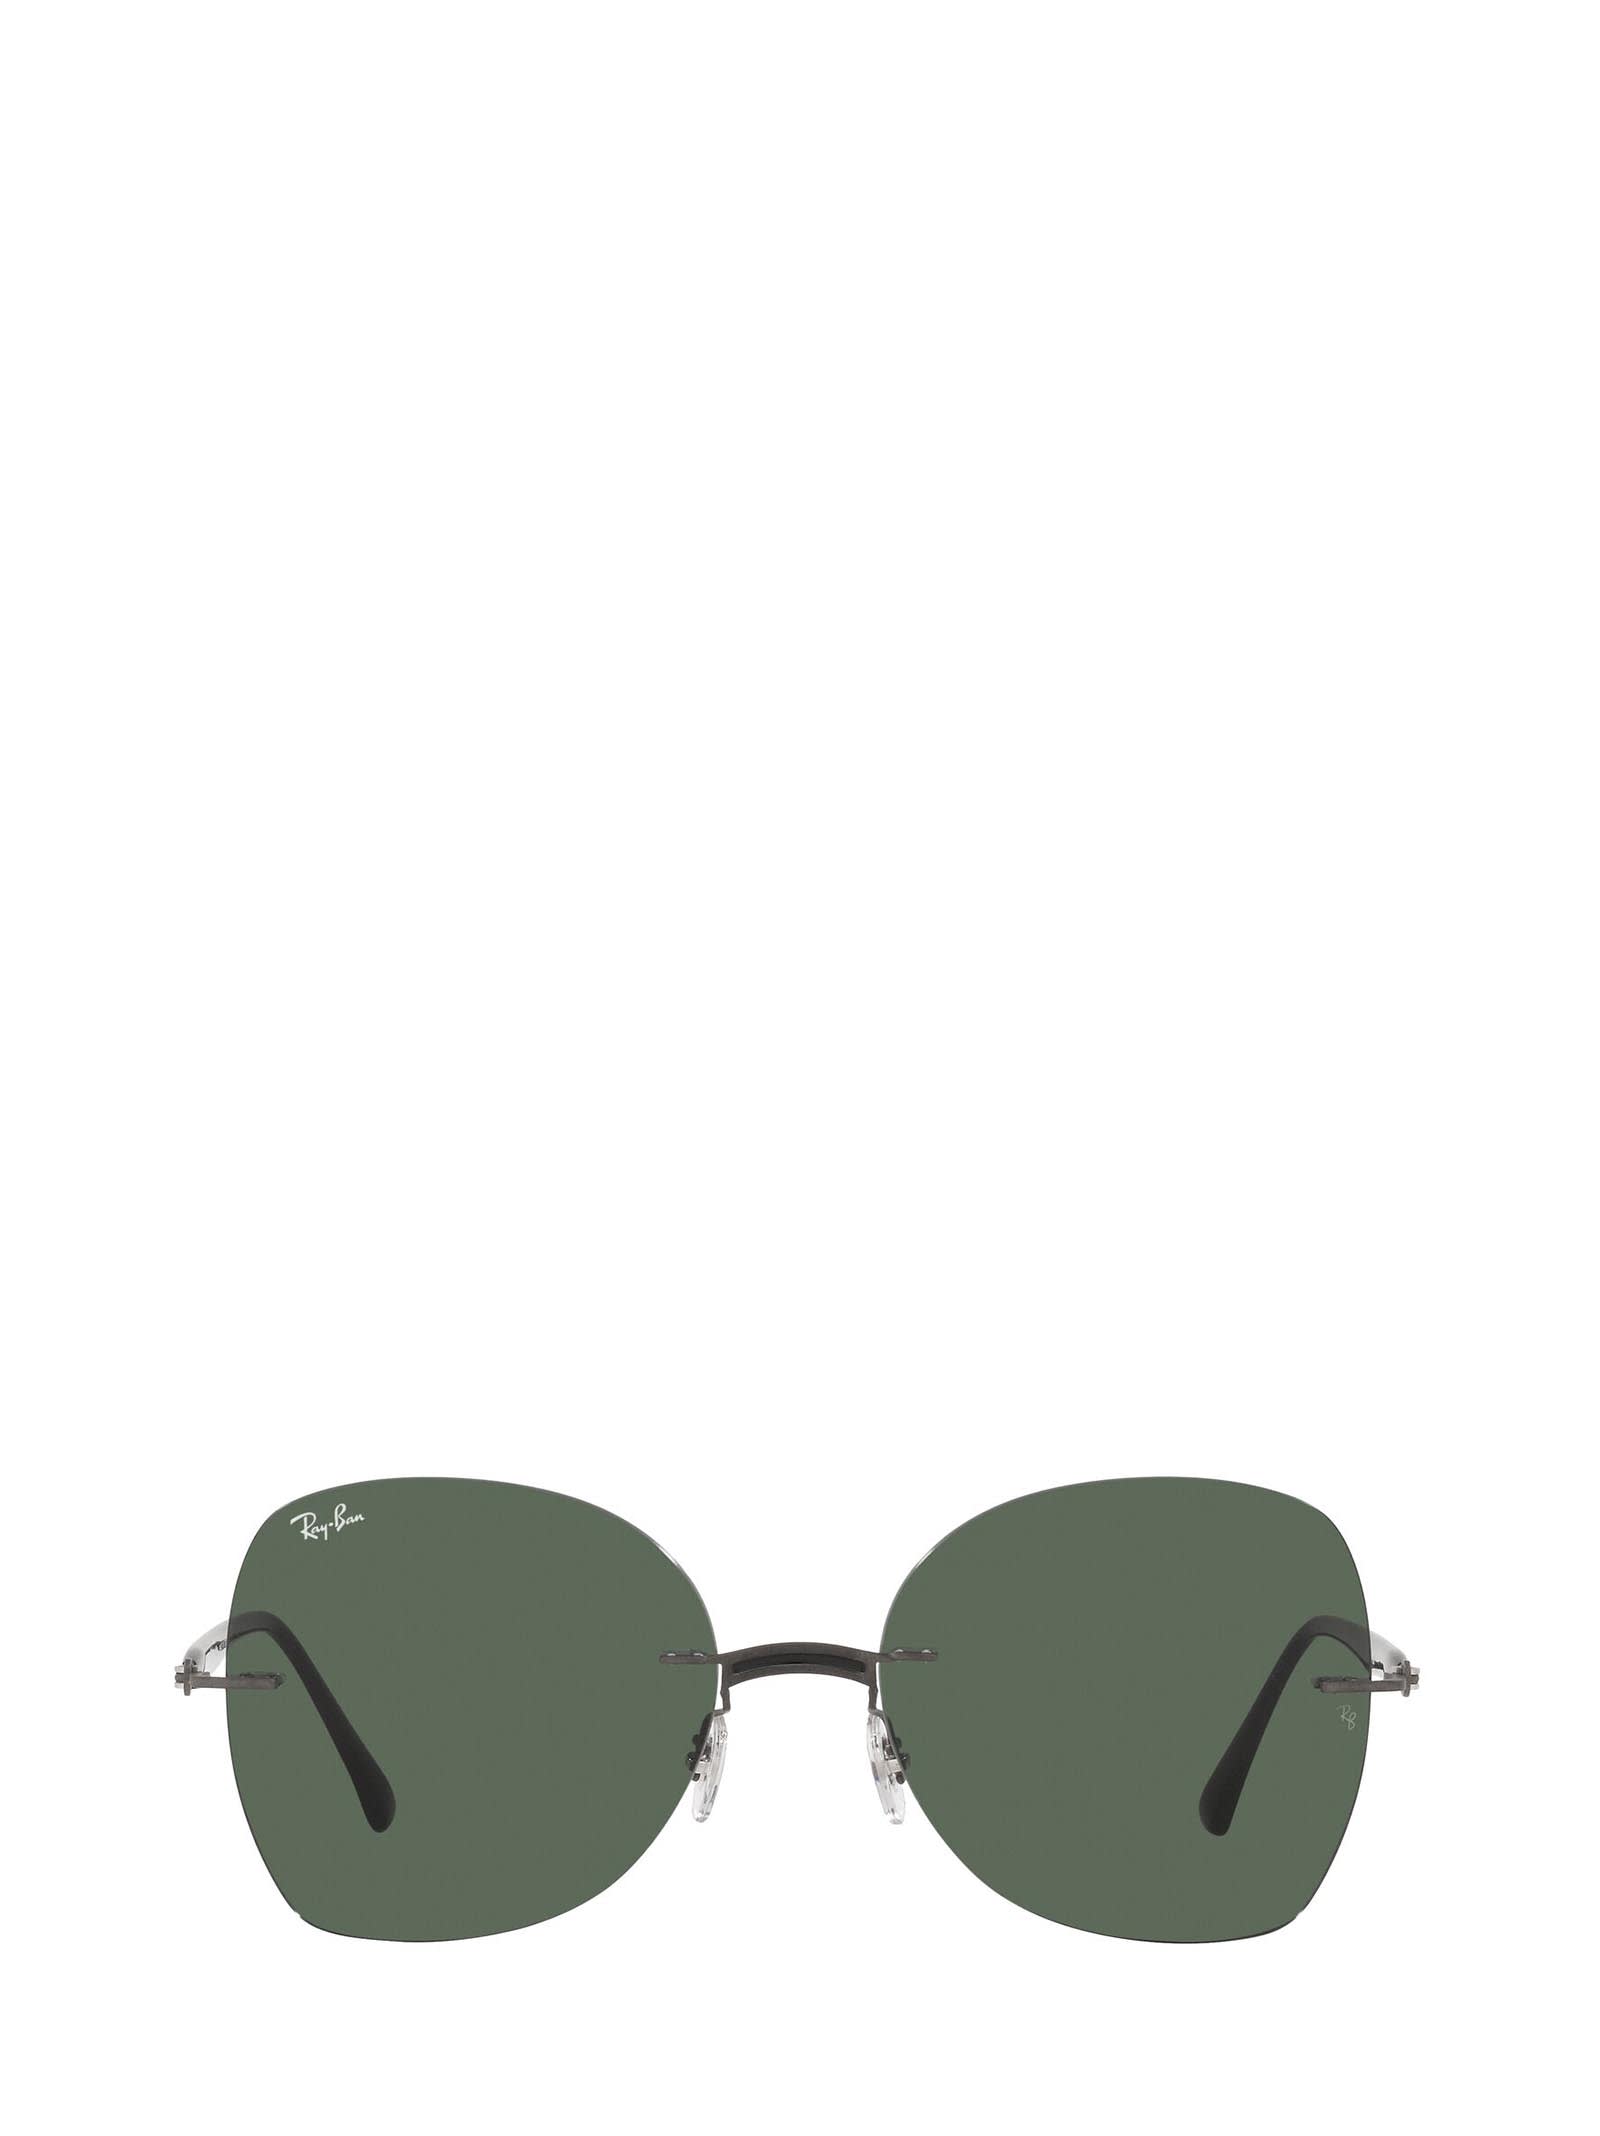 Ray-Ban Ray-ban Rb8066 Black On Sanding Gunmetal Sunglasses